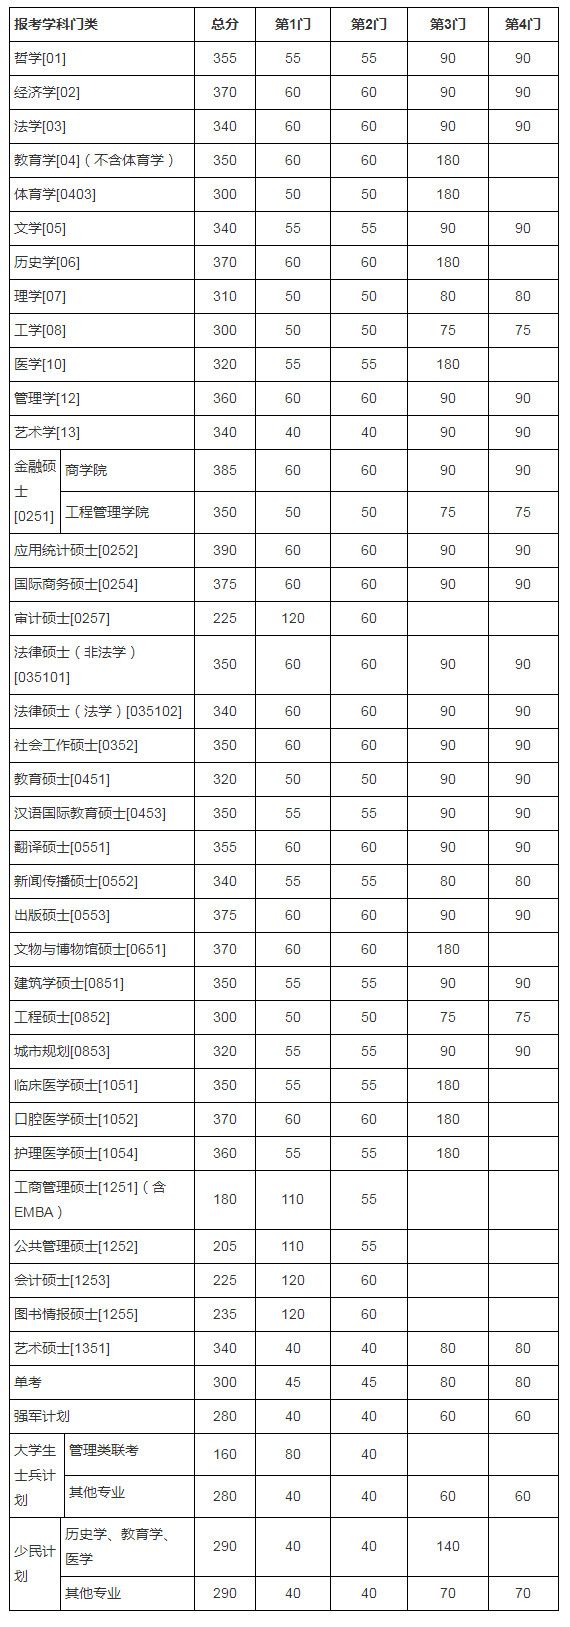 南京大学2017考研分数线